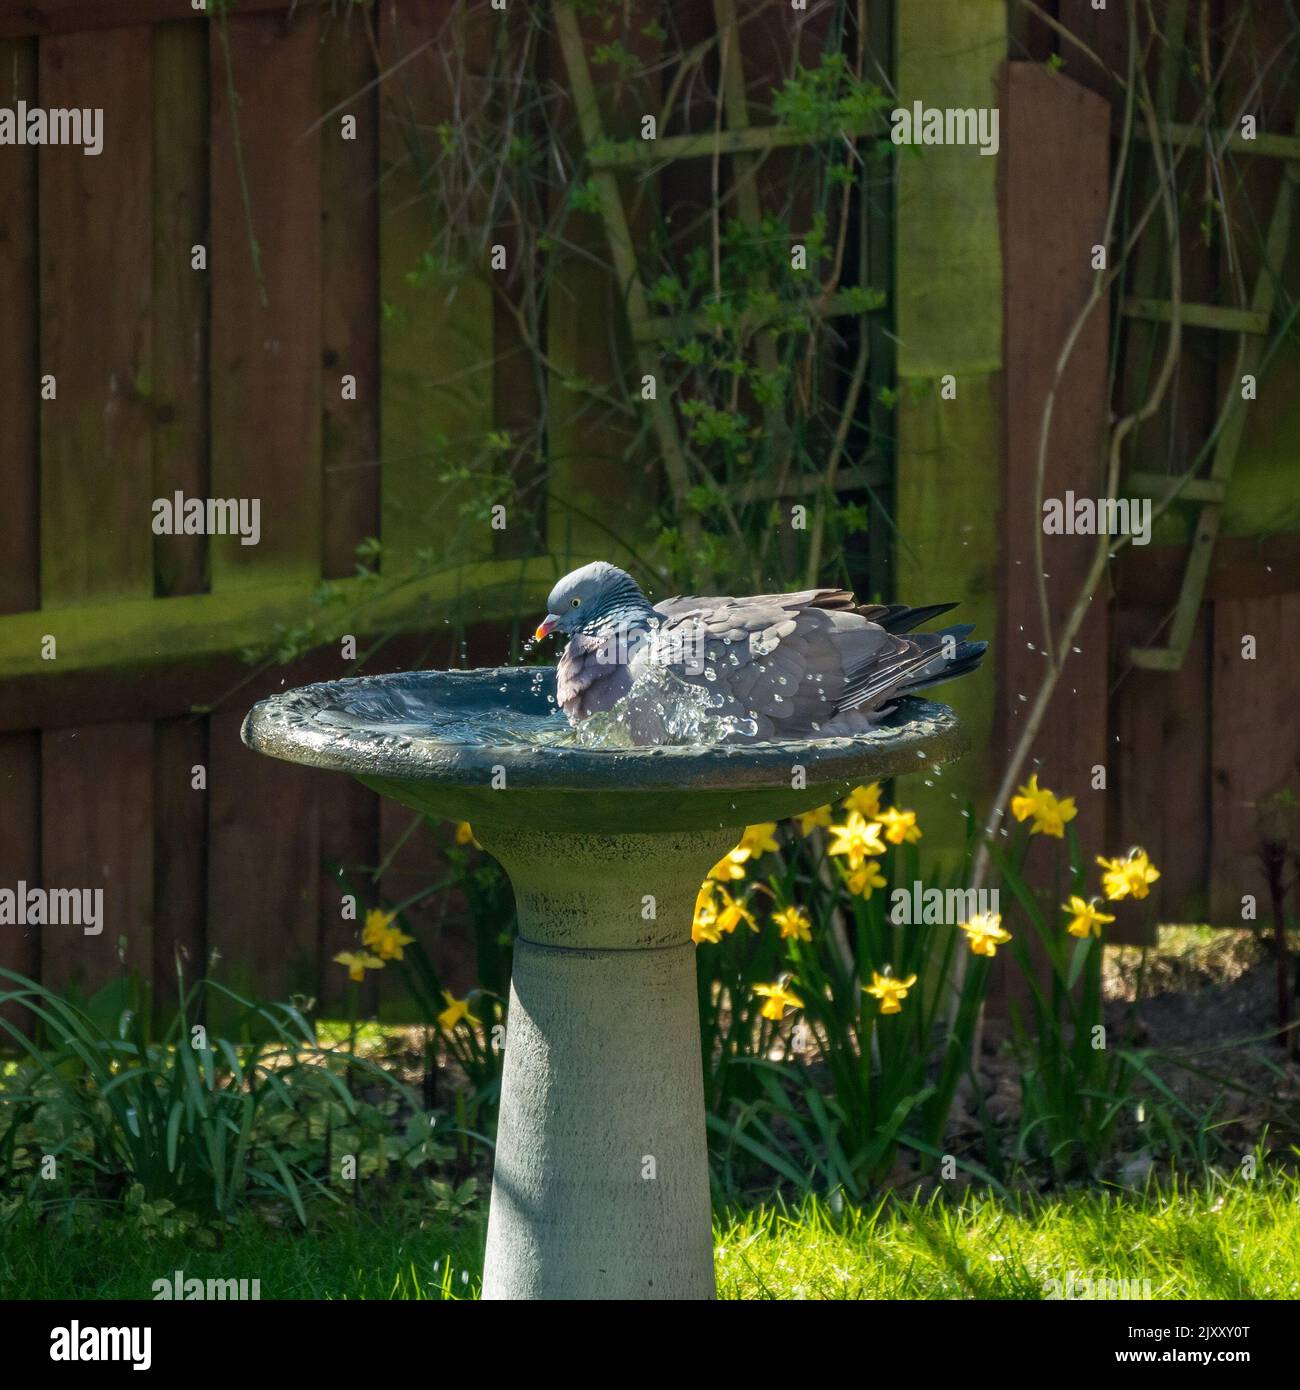 Una paloma de madera común adulto / paloma de madera (Columba palumbus) bañarse en el agua en el jardín birdbath, Leicestershire, Reino Unido Foto de stock